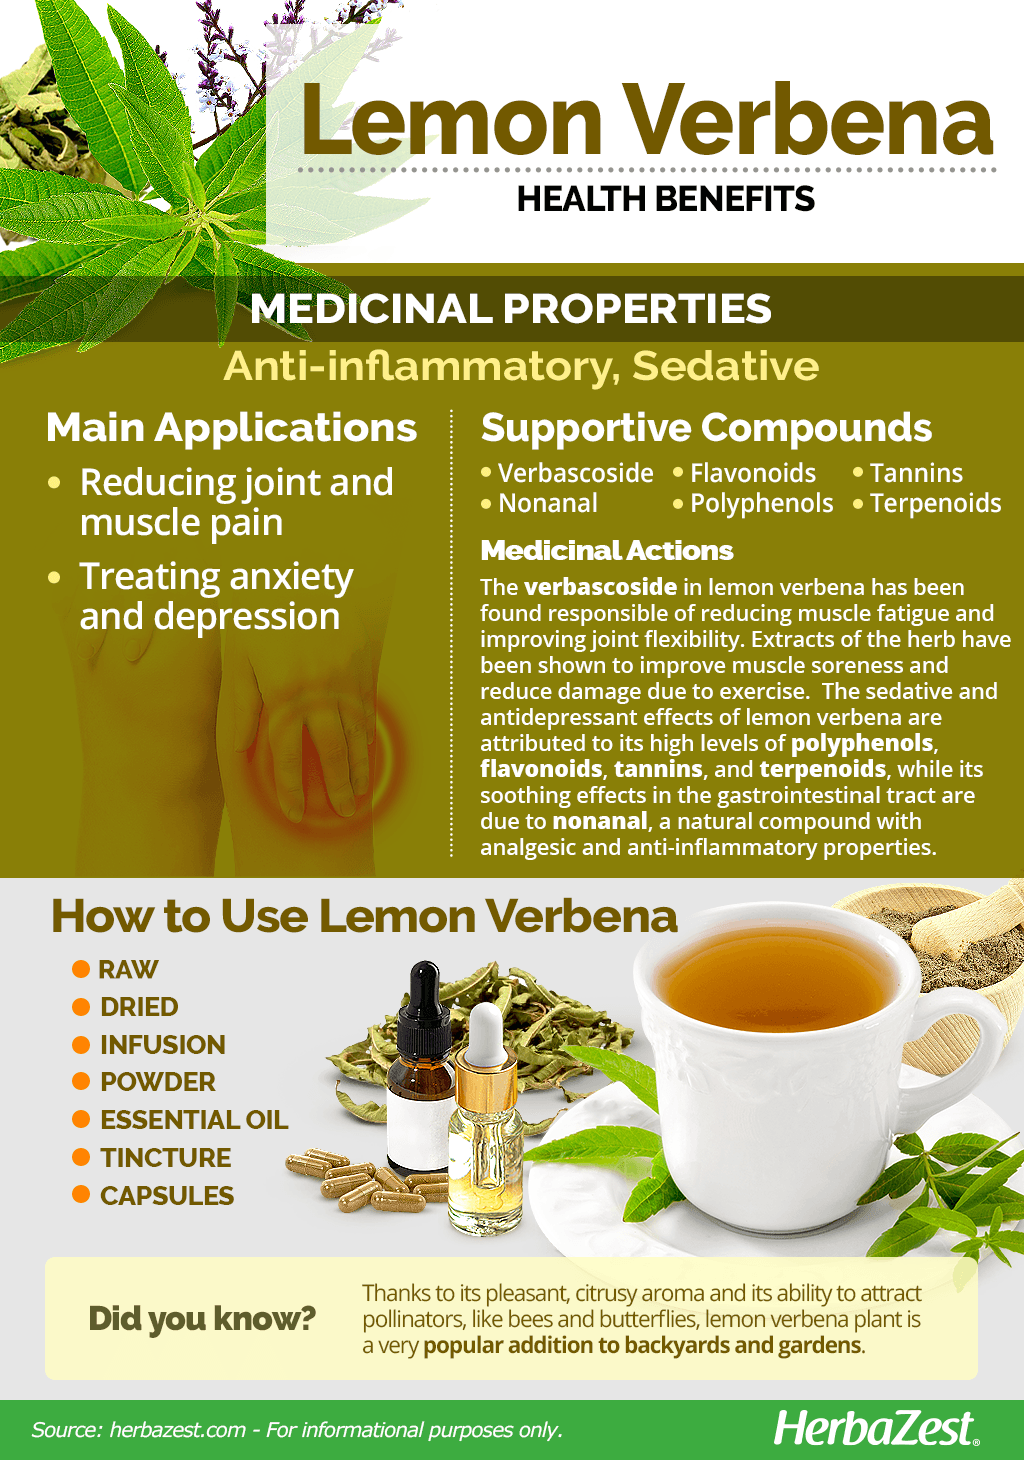 All About Lemon Verbena